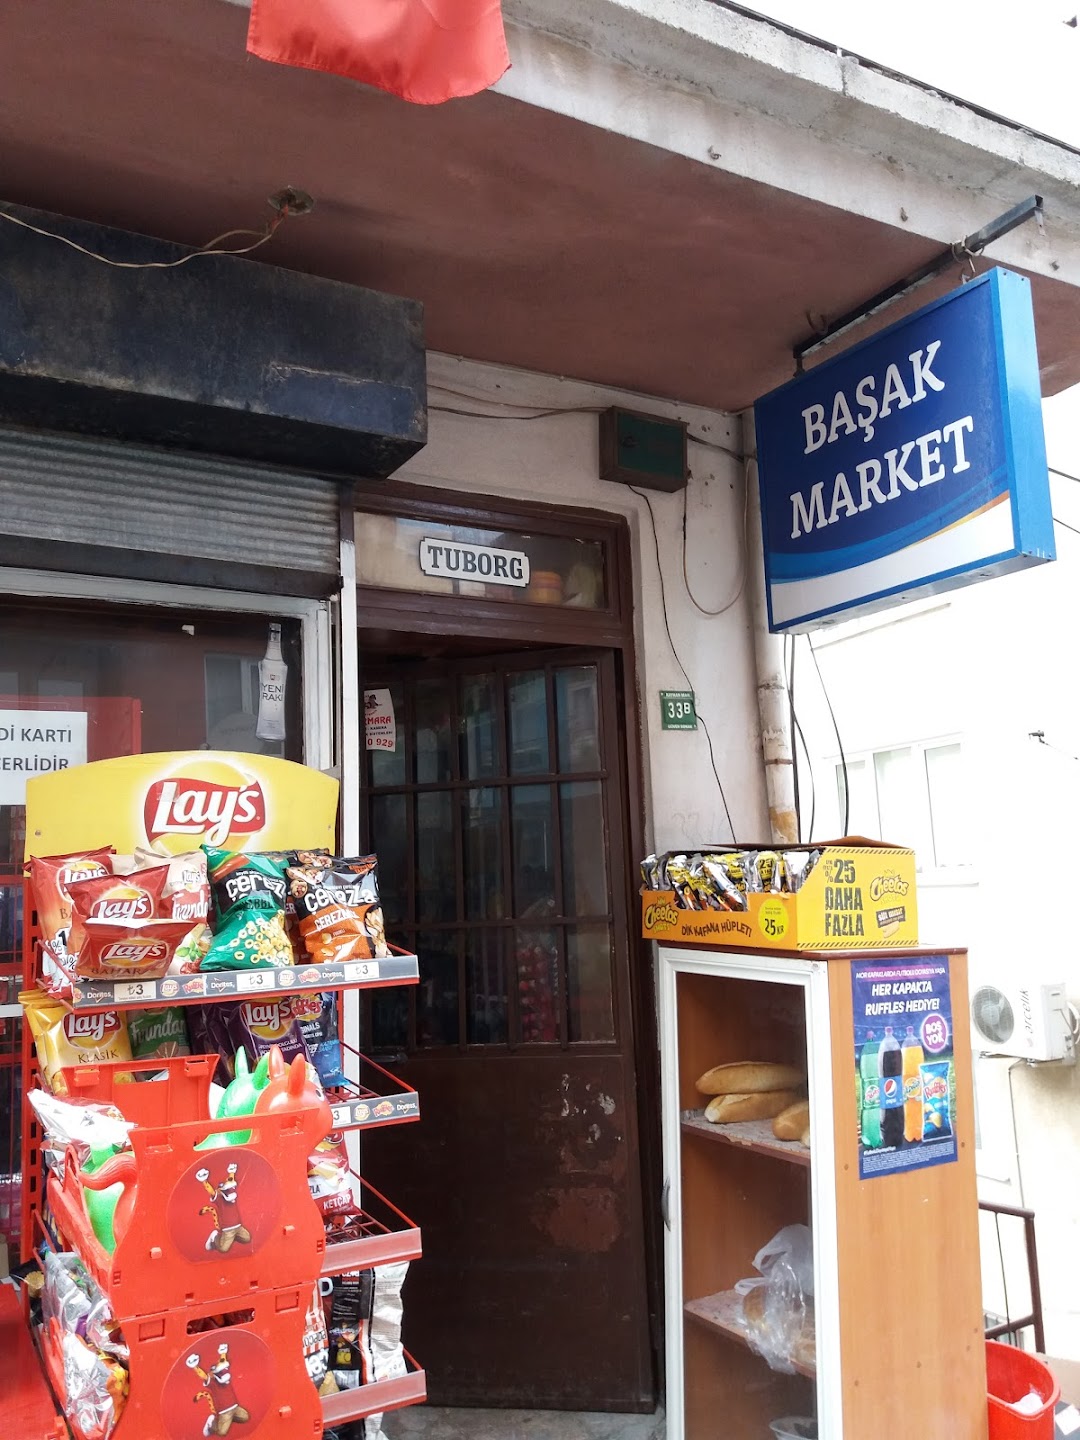 Baak Market